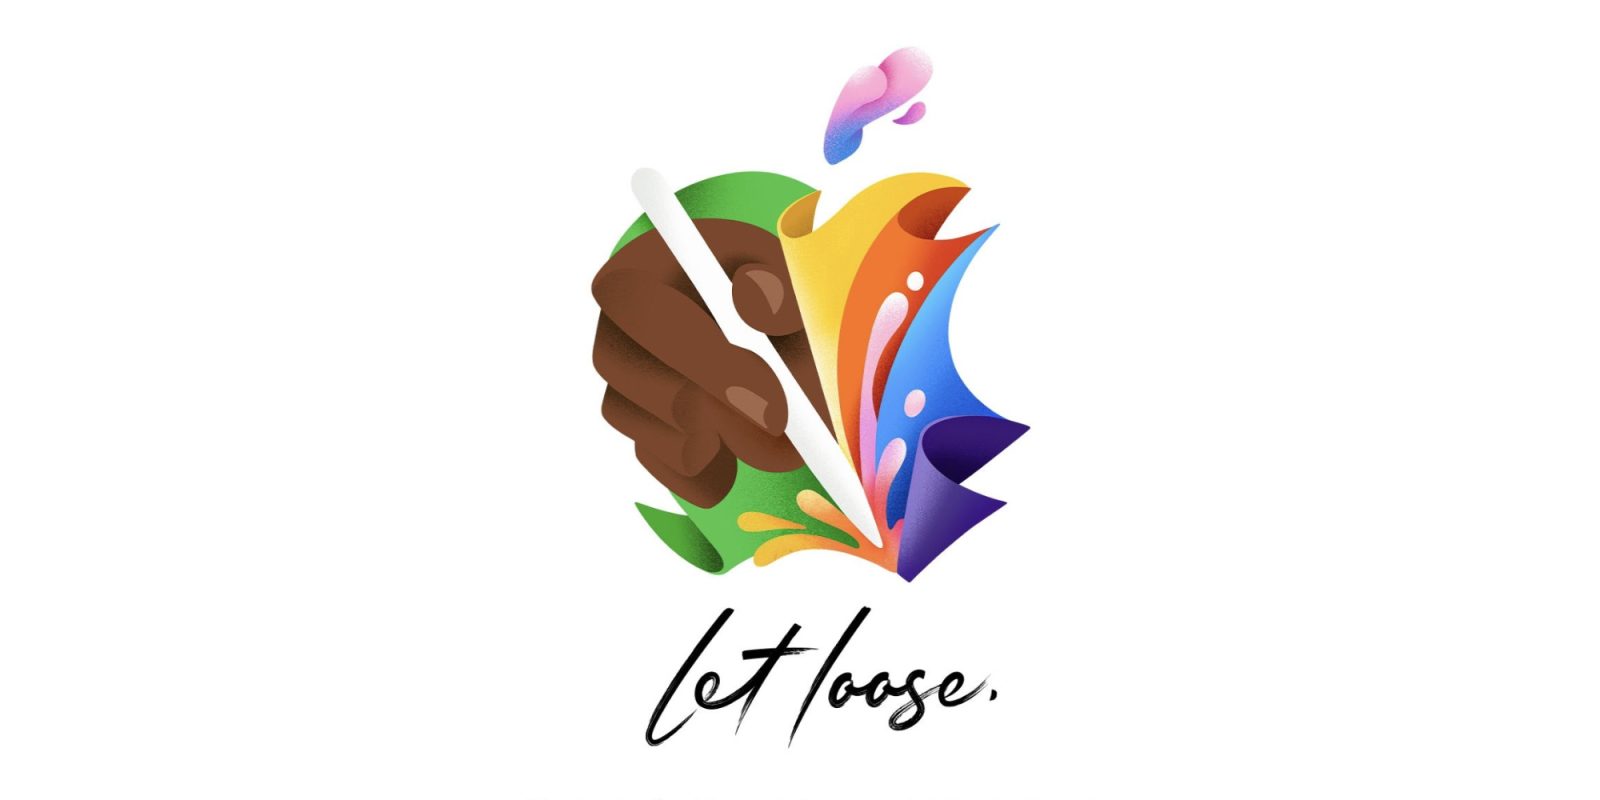 El evento iPad 'Let Loose' de Apple también incluirá un evento especial en Londres